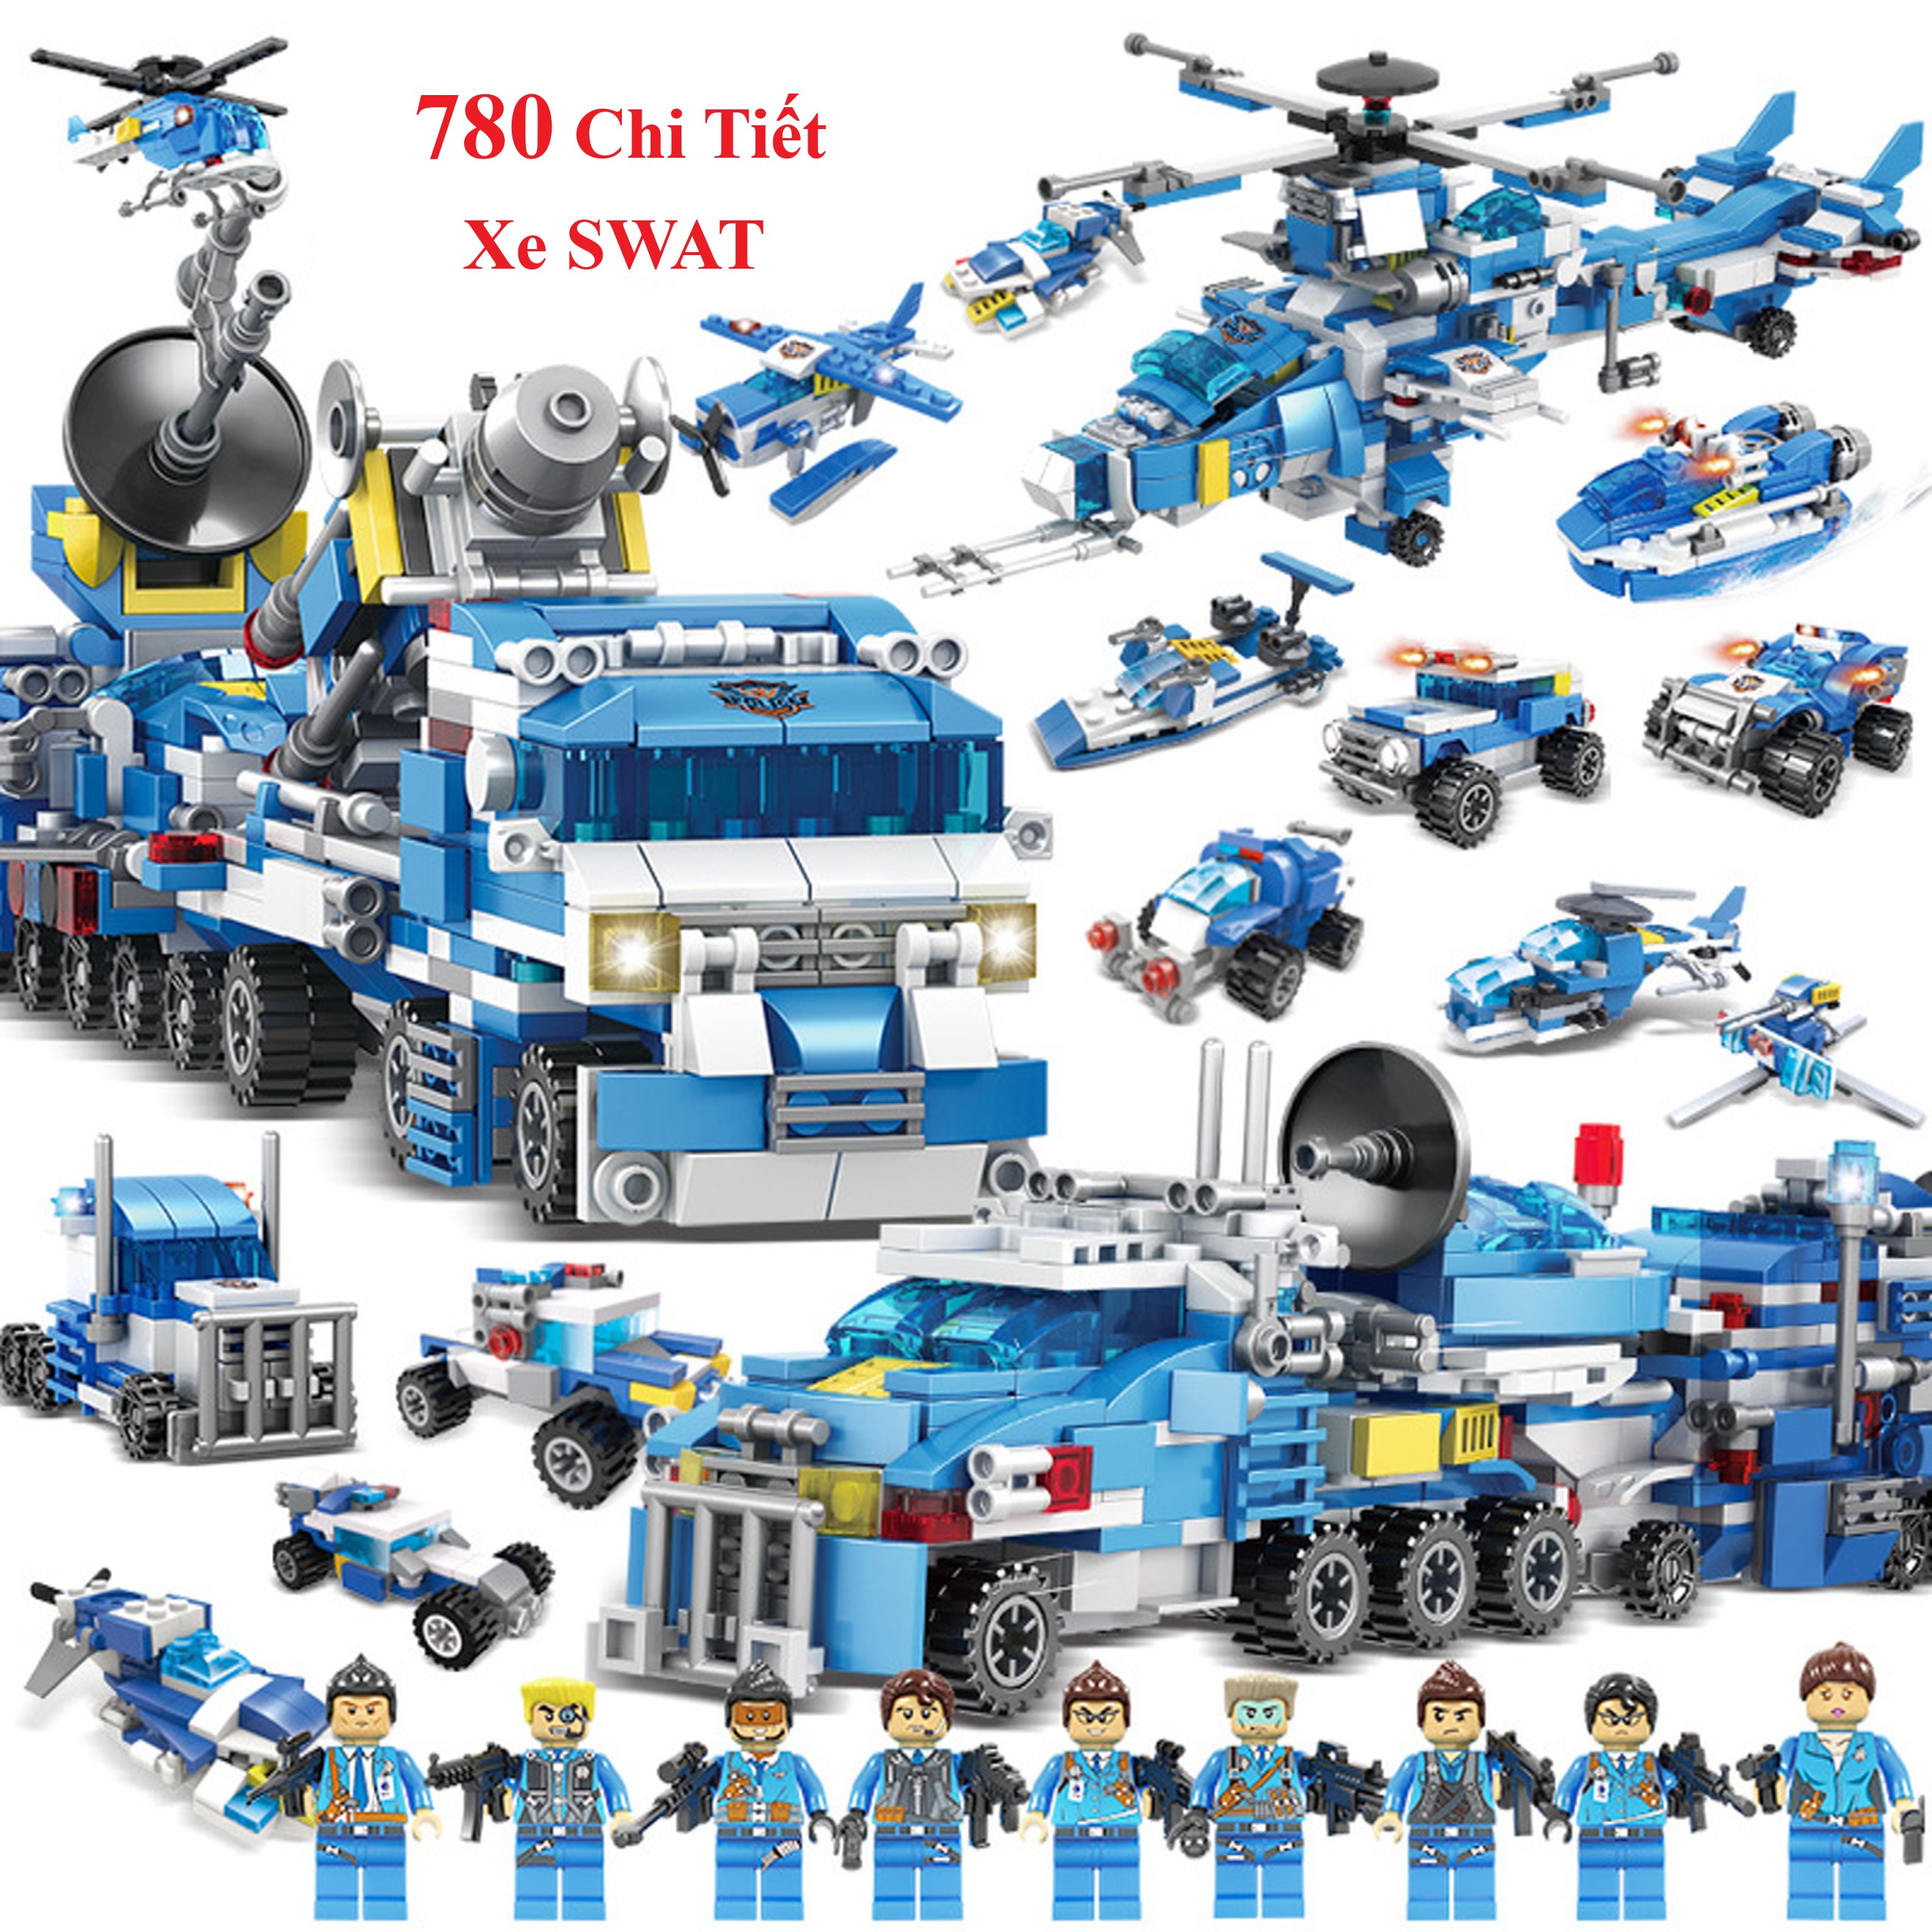 Bộ Đồ Chơi Xếp Hình Lego Chiến Hạm, Lego Tàu Thủy, Lego Tàu Chiến